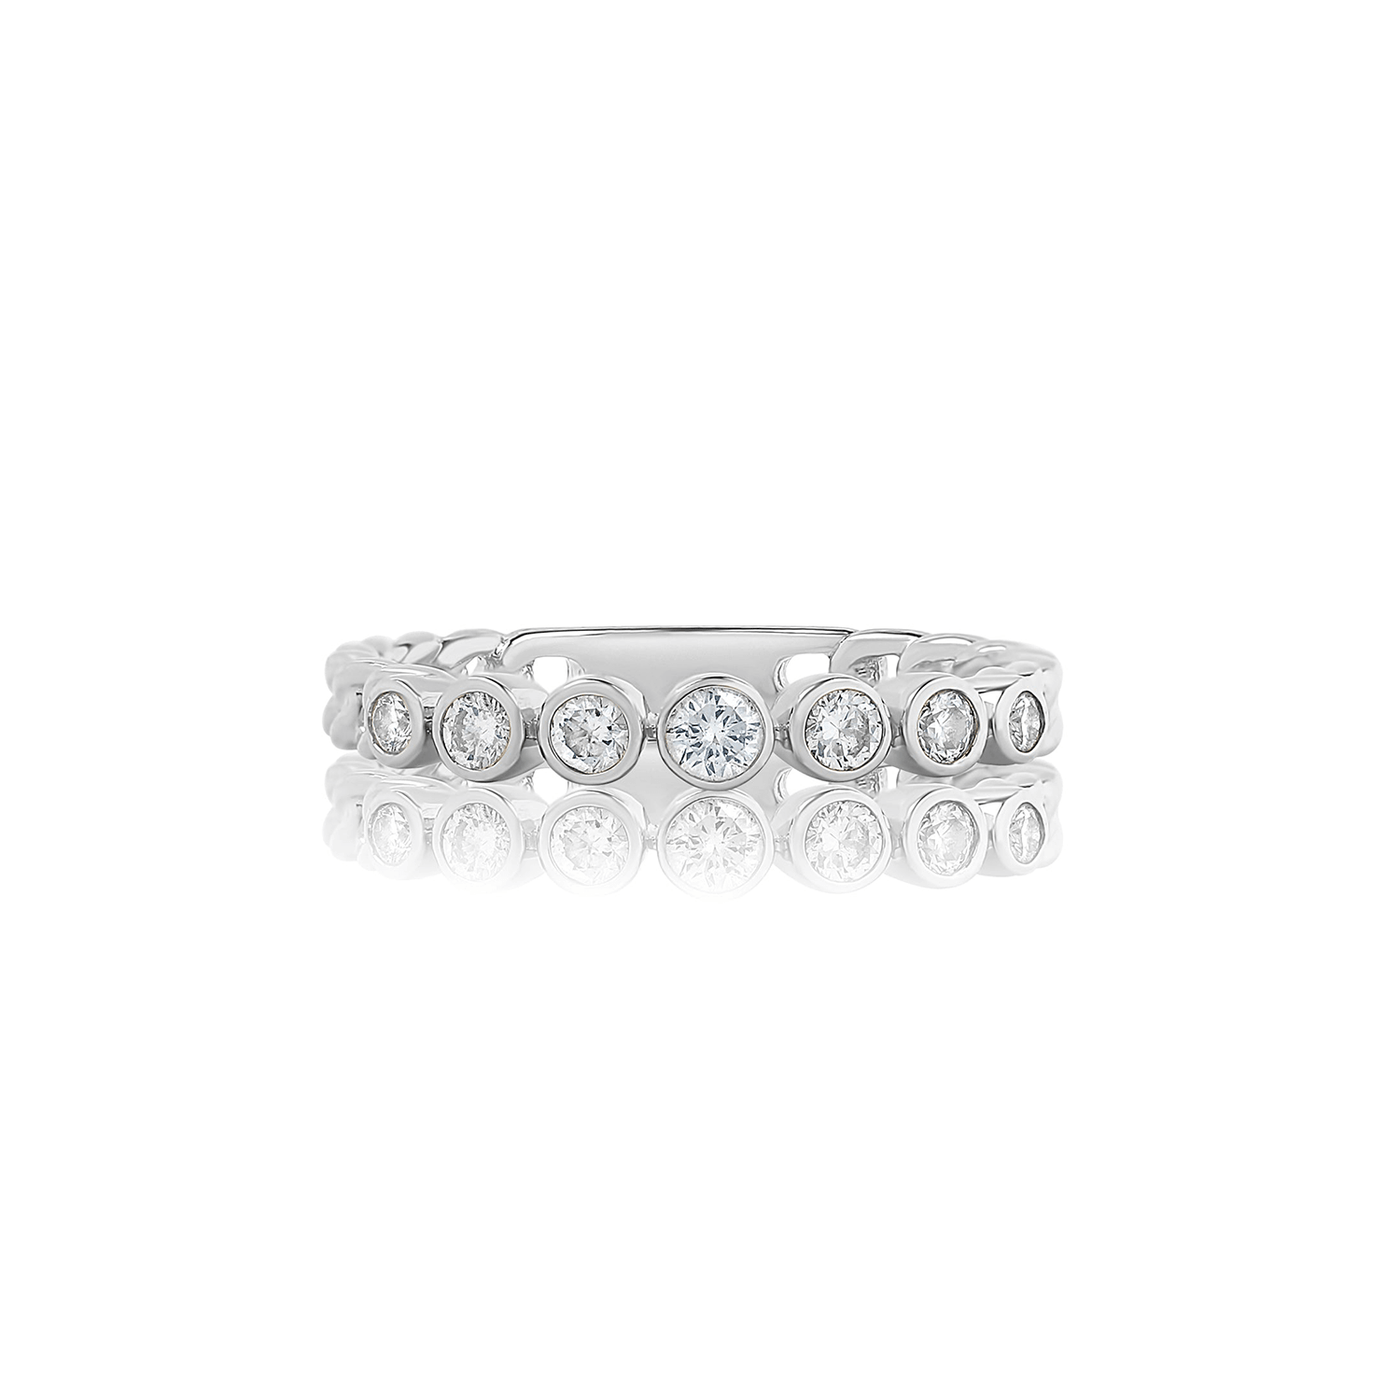 Round Bezel Diamond Chain Ring